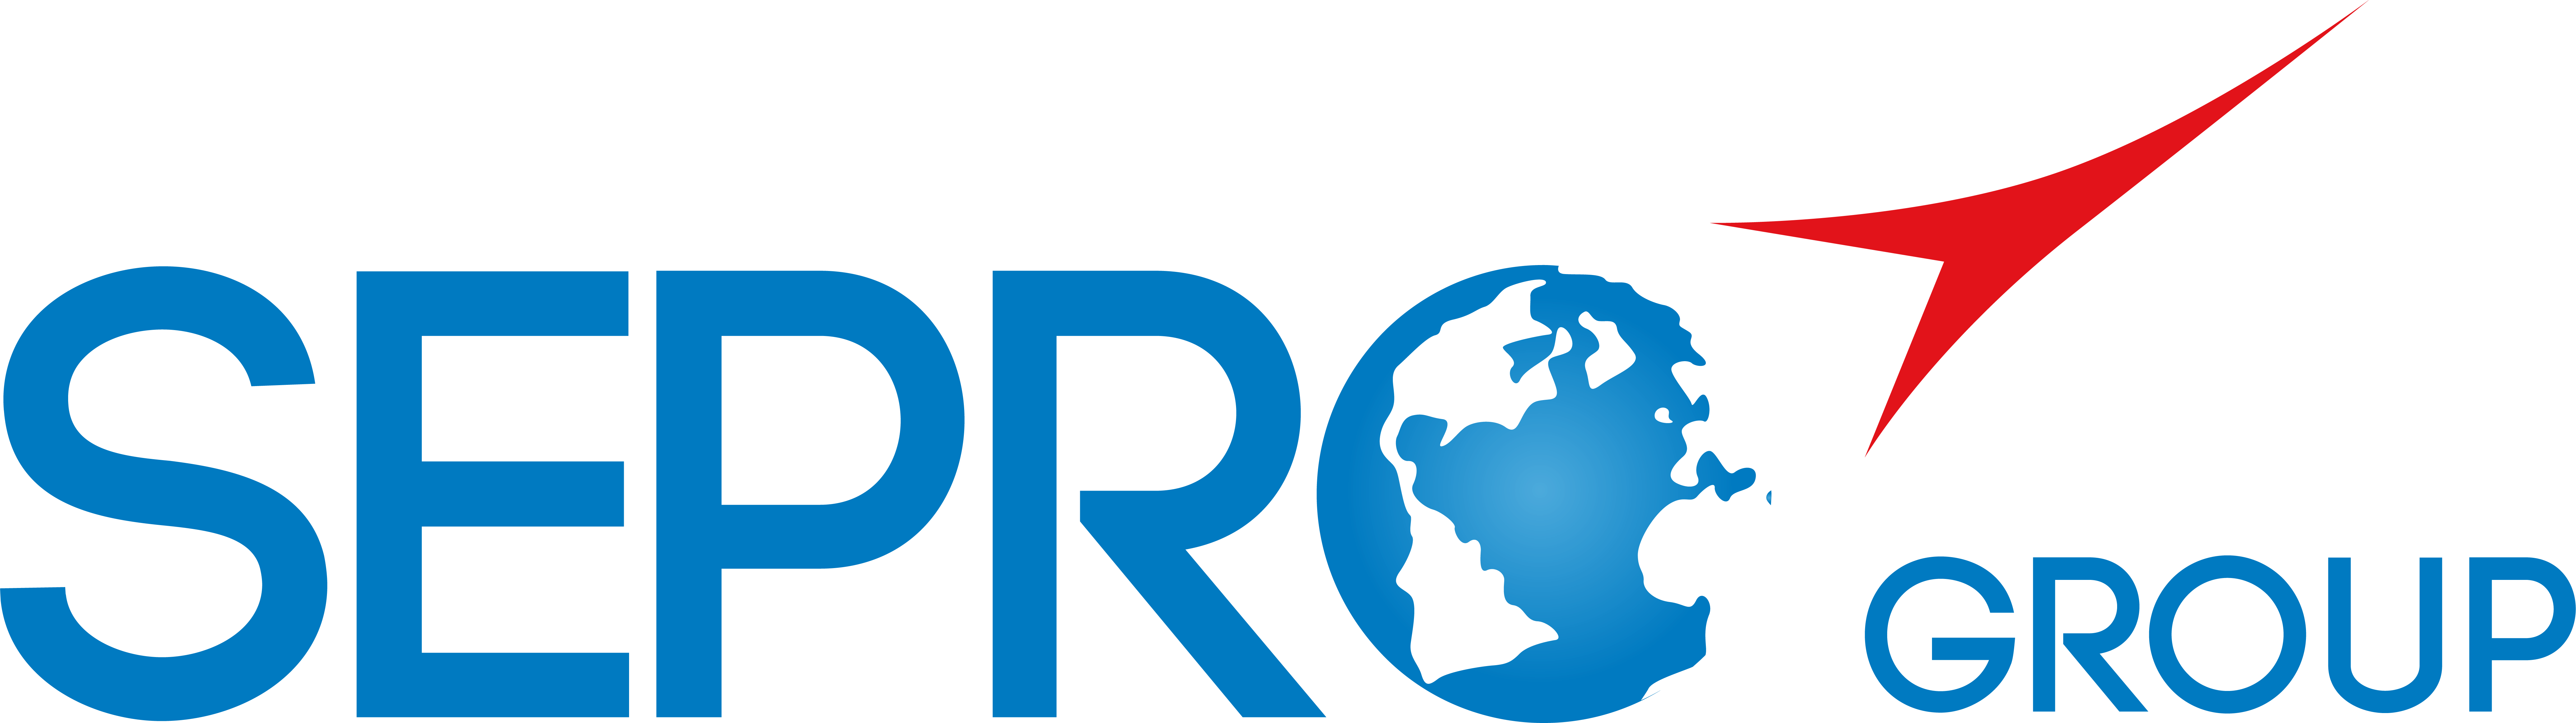 Logo Sepro Group - 2013